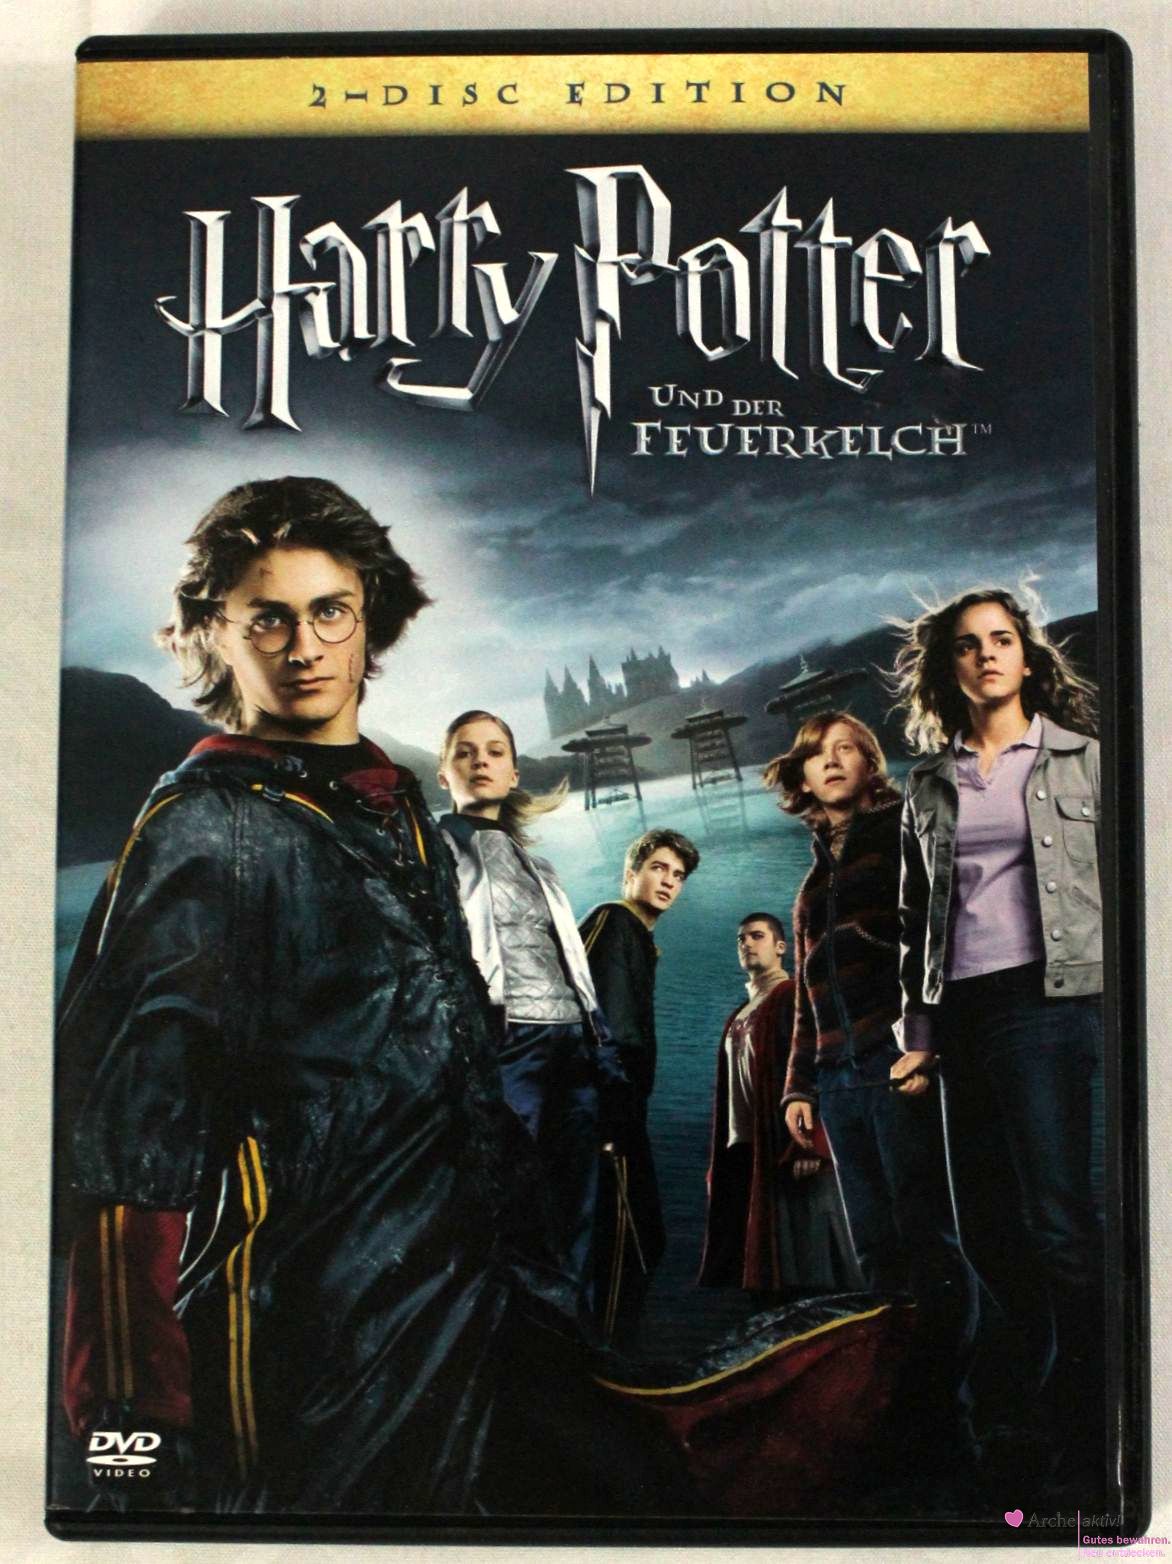 Harry Potter und der Feuerkelch, 2-Disc Edition, gebraucht